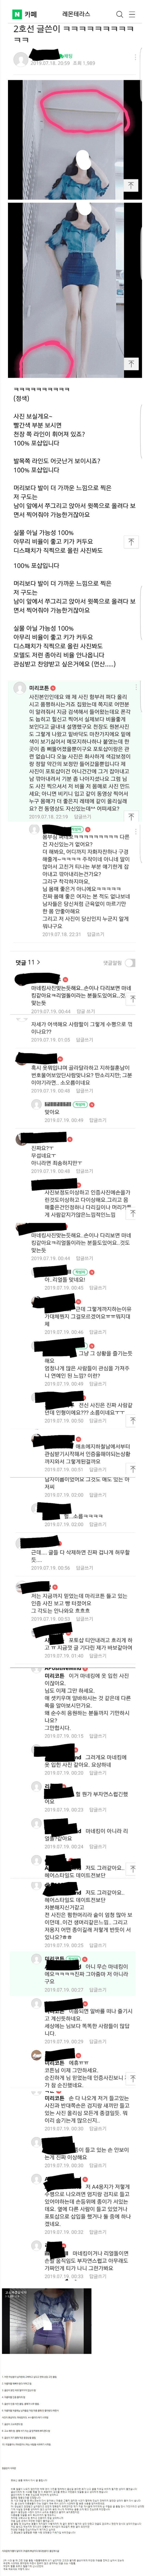 유명 맘카페 몸매평가 레전드 사건.jpg